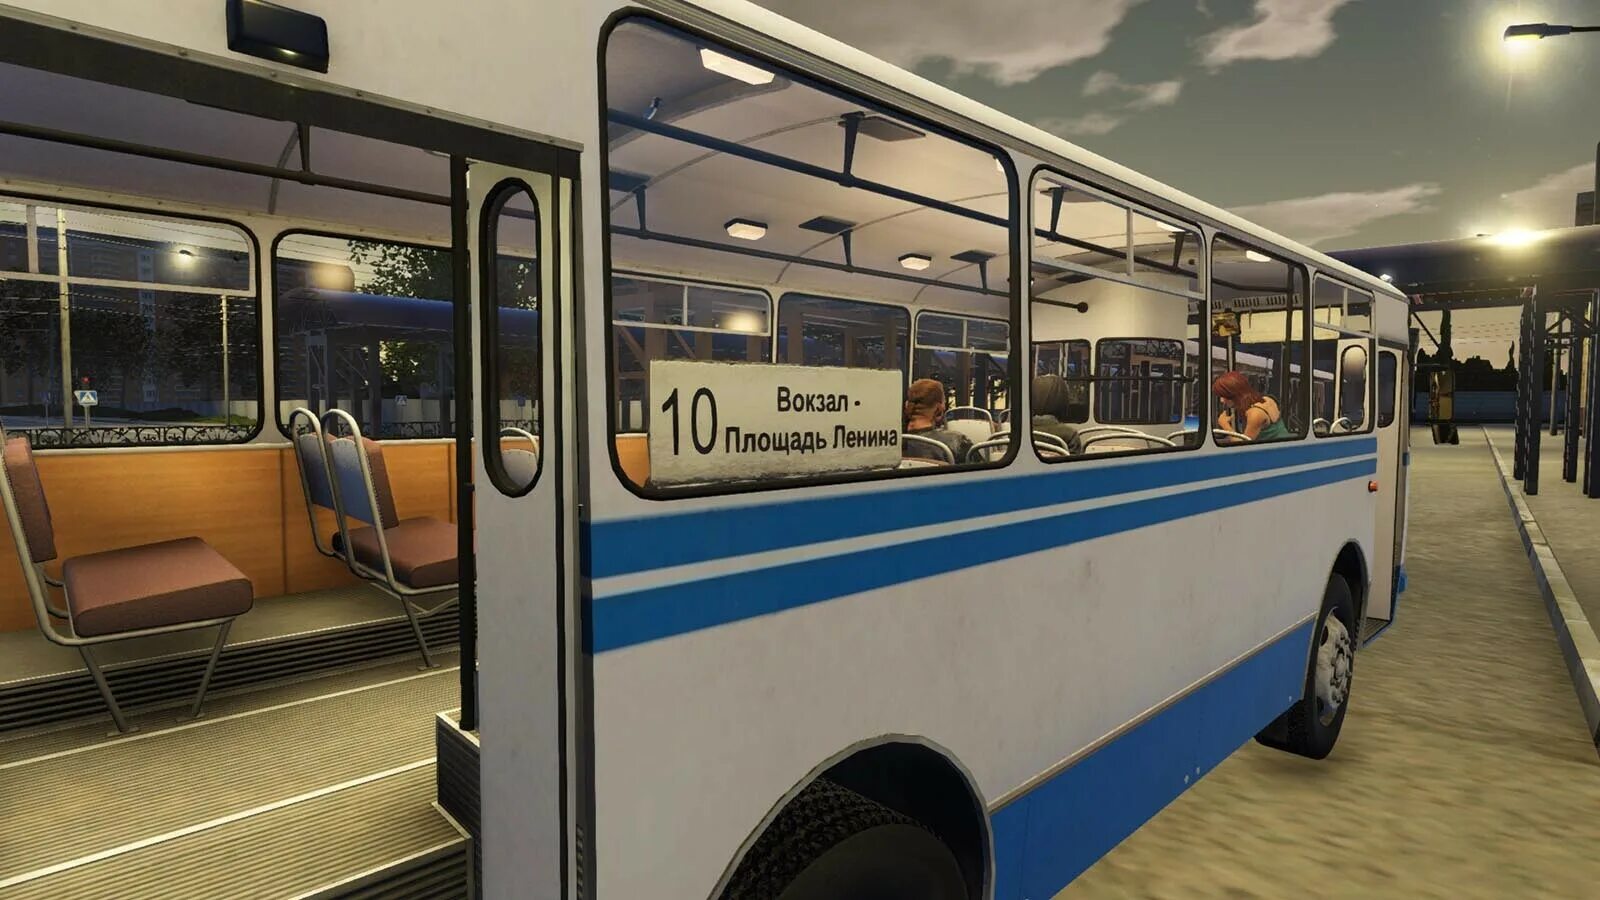 Bus Driver Simulator 2019 Серпухов. Bus Driver Simulator 19. Bus Driver Simulator 2019 автобусы. Бус драйвер симулятор 2019.